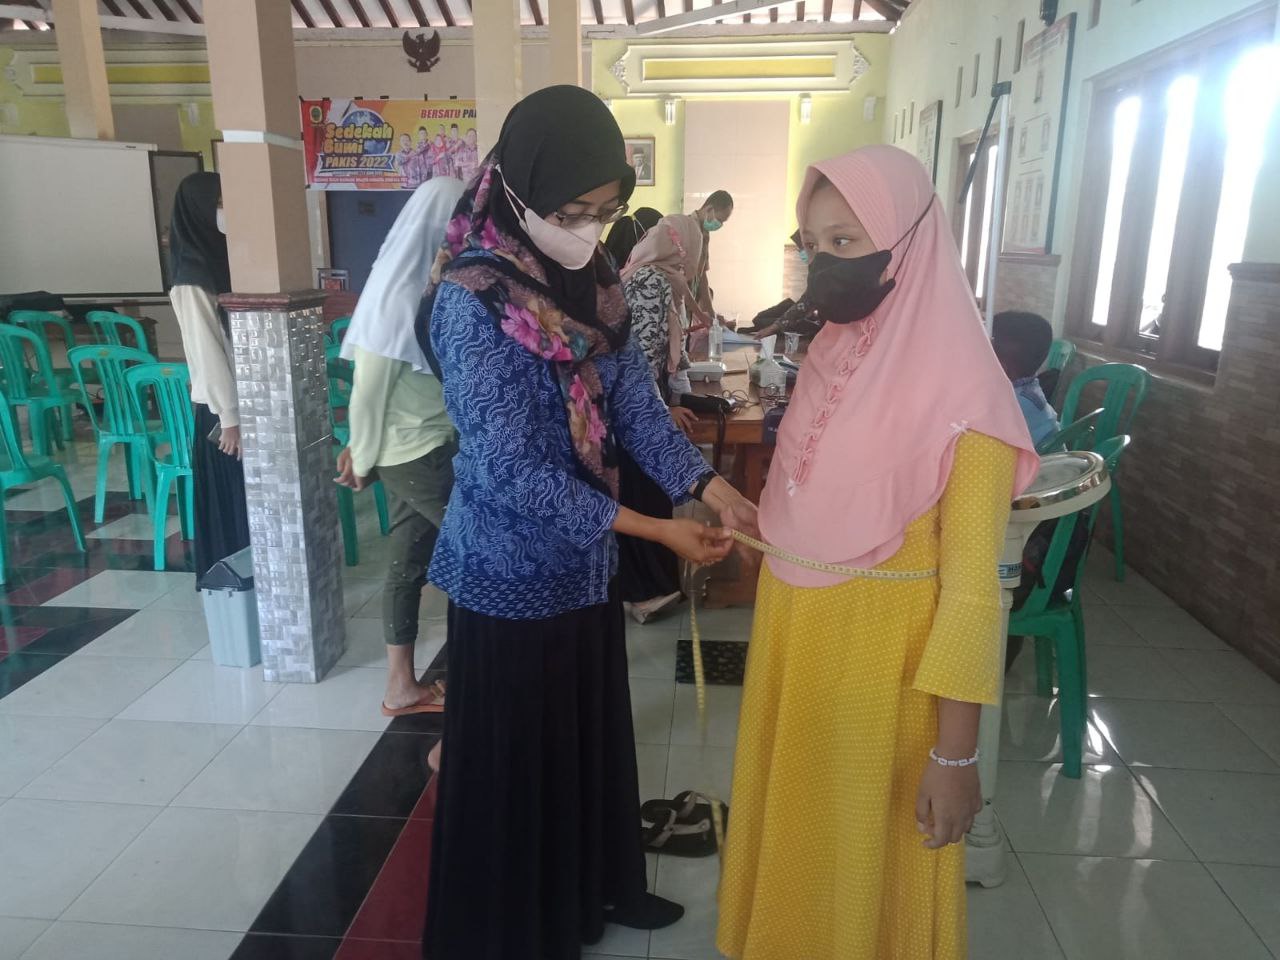 Foto : Foto bersama kegiatan Posyandu Remaja Desa Pakis Kecamatan Tayu Kabupaten Pati (Sumber : mitrapost.com)